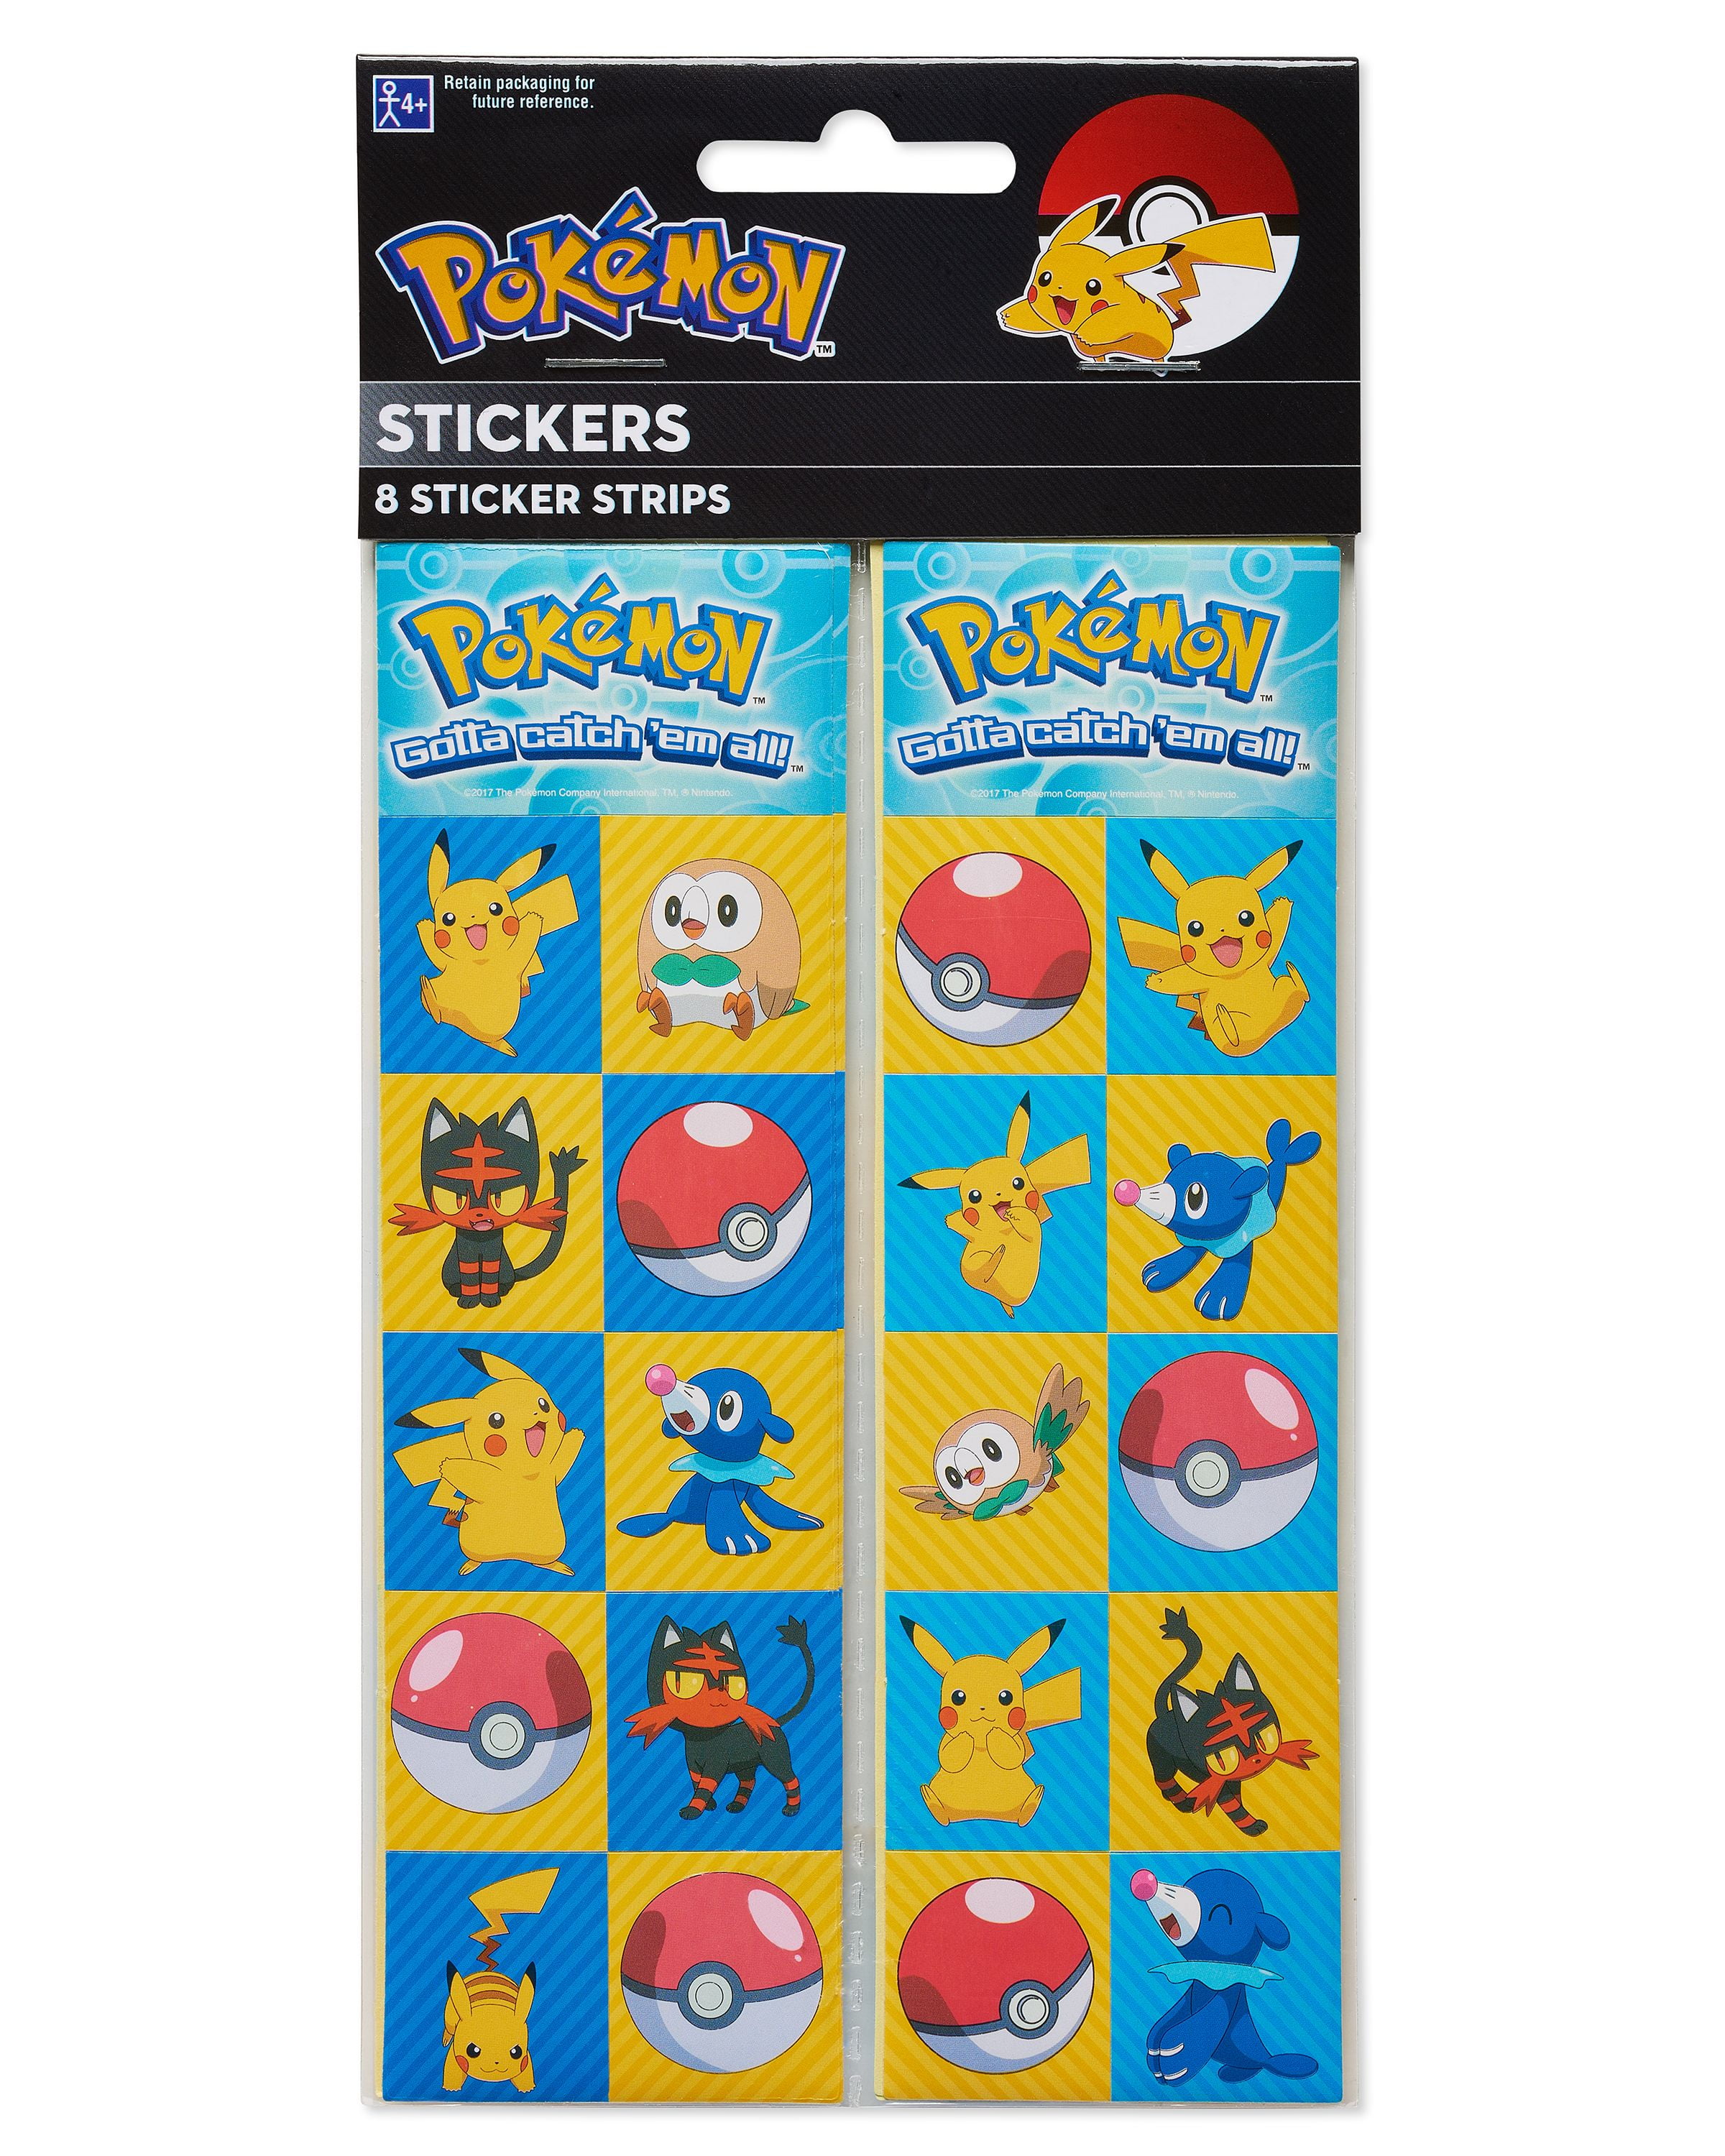 Pokémon Party Favor Sticker Sheets, 8ct 